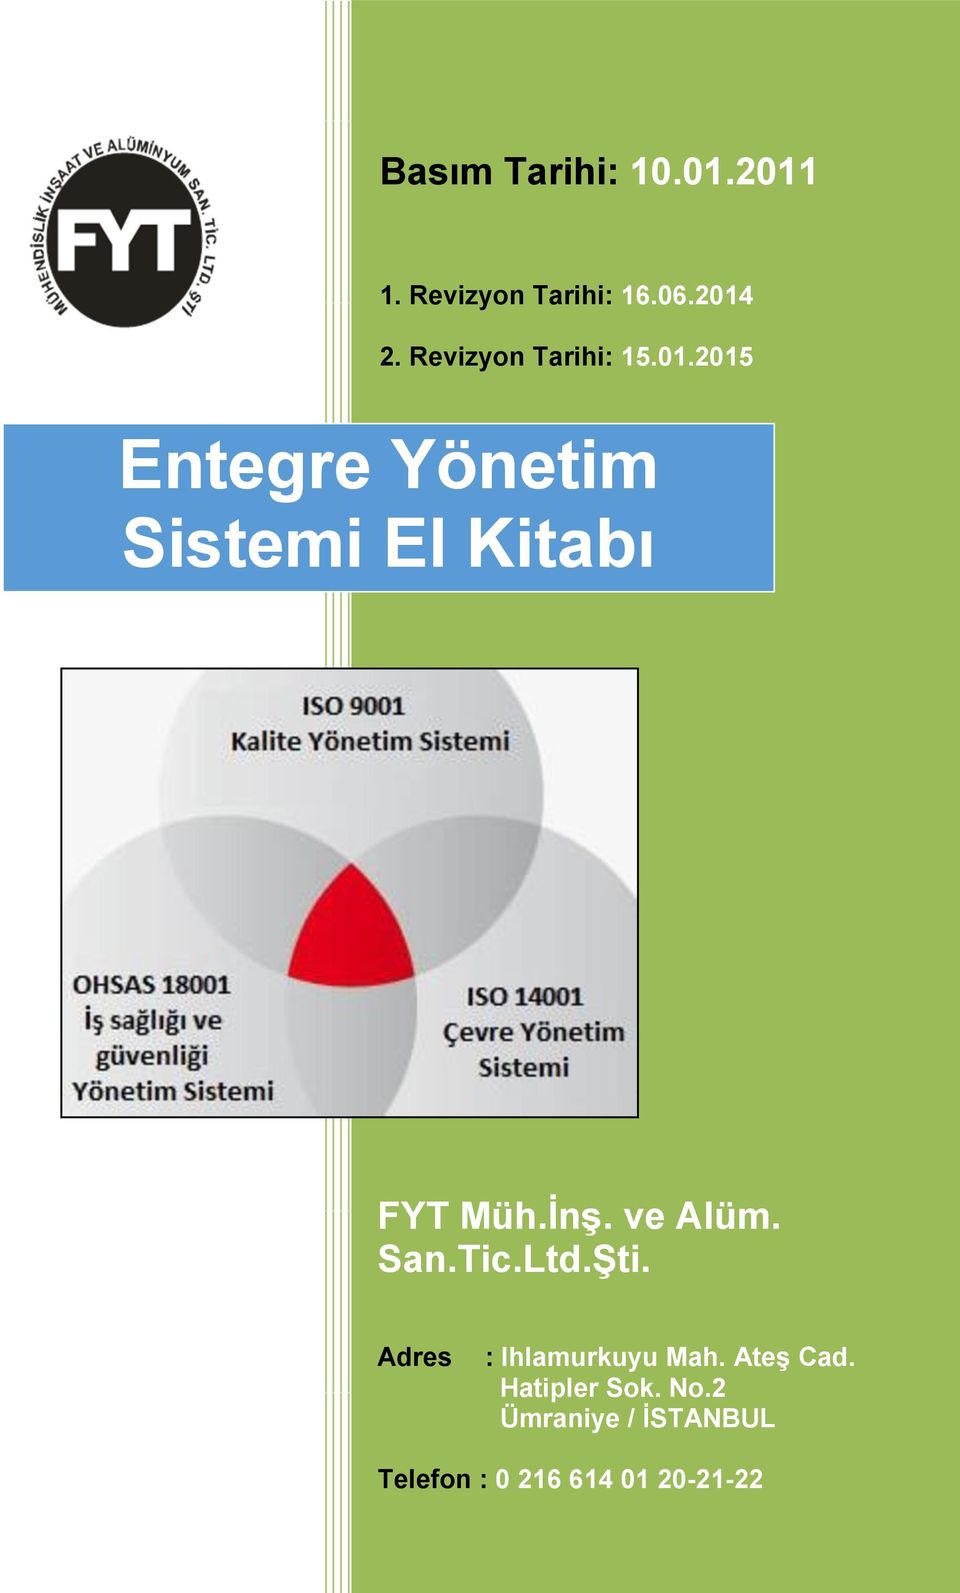 Yönetim Sistemi El Kitabı FYT Müh.İnş. ve Alüm. San.Tic.Ltd.